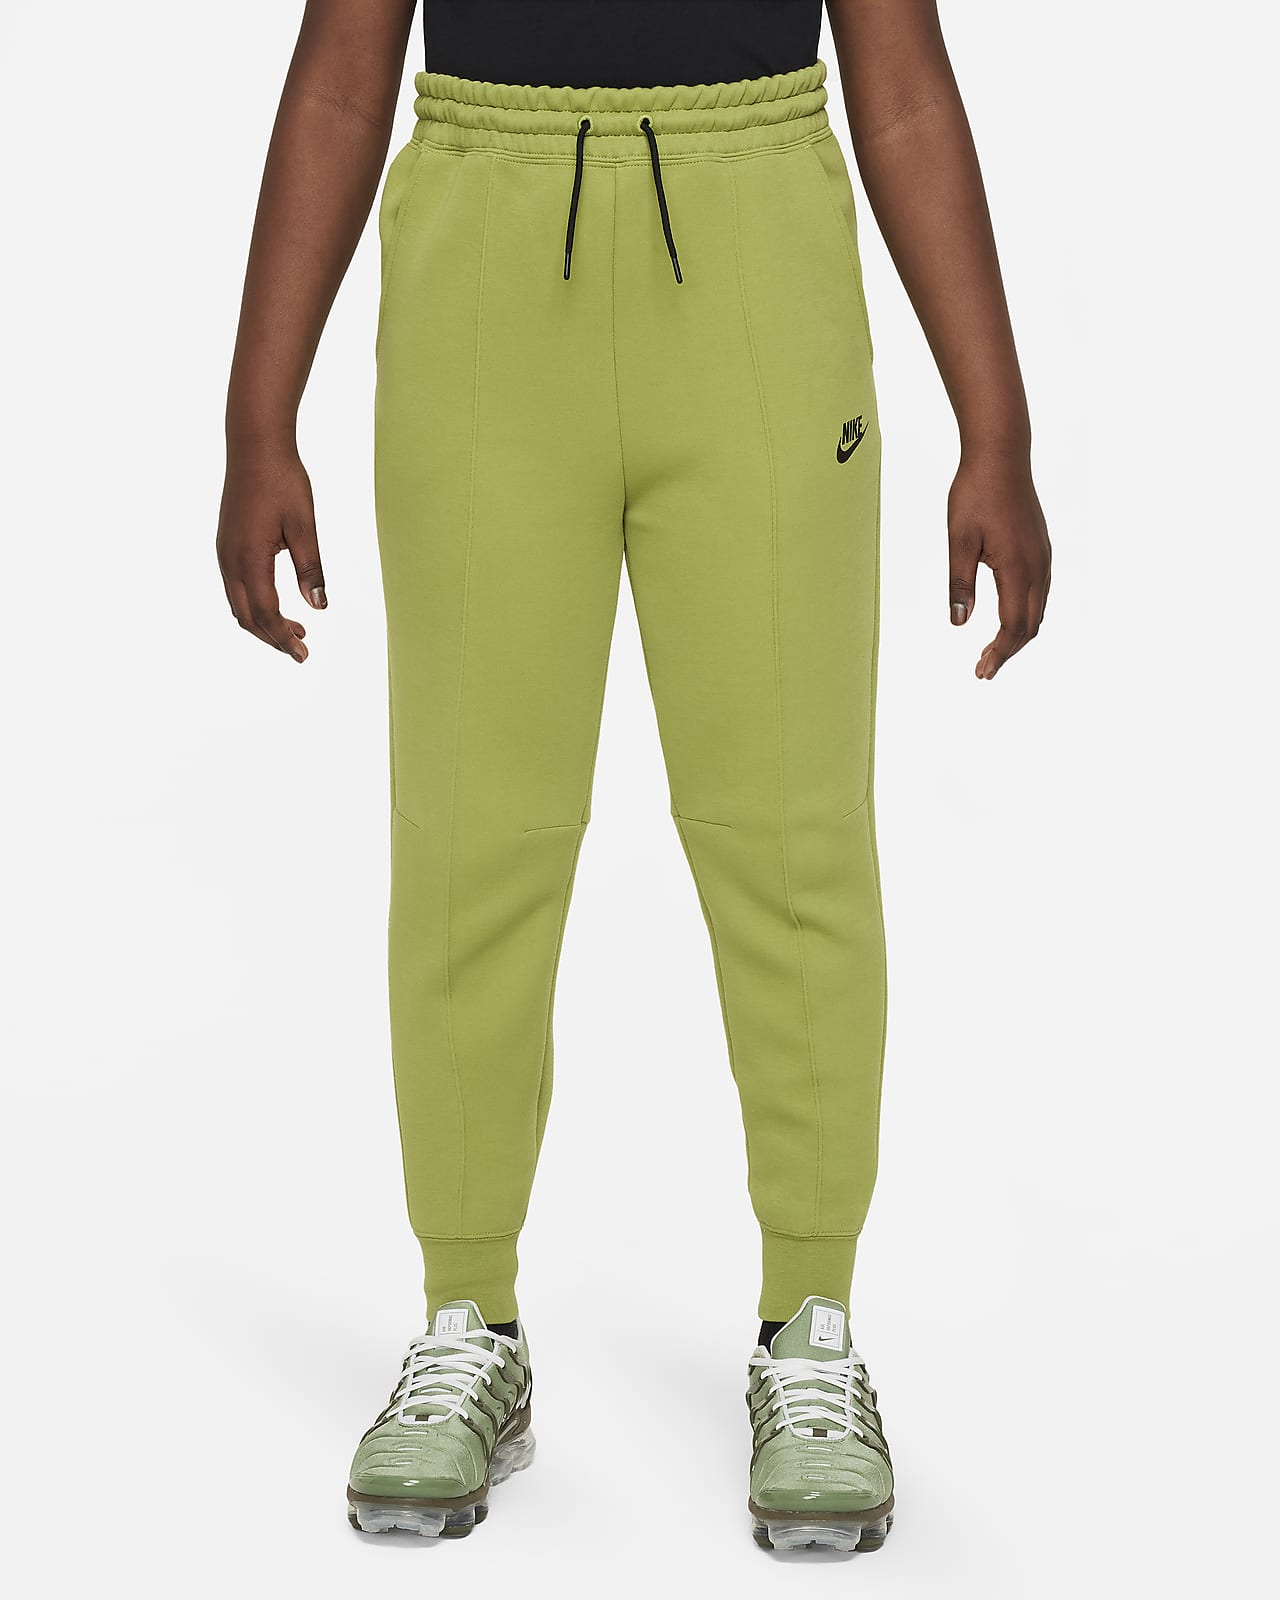 Women Nike Sportswear Tech Fleece Barley Green Joggers CW4292 394 Size  XLARGE XL